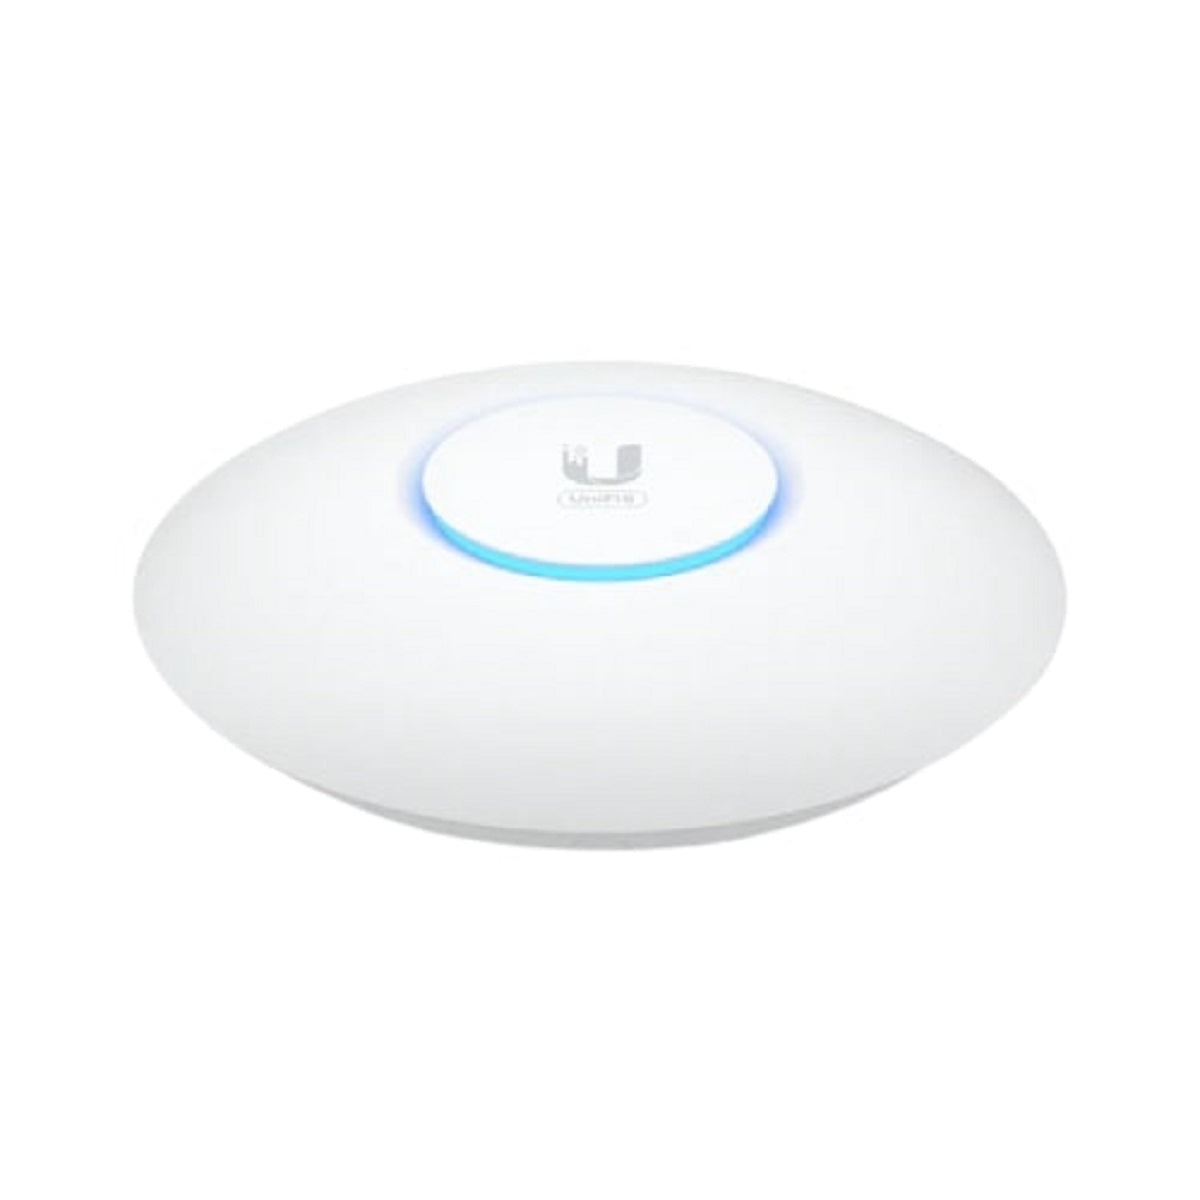 Ubiquiti U6-PLUS (U6+) UniFi WiFi 6 Access Point